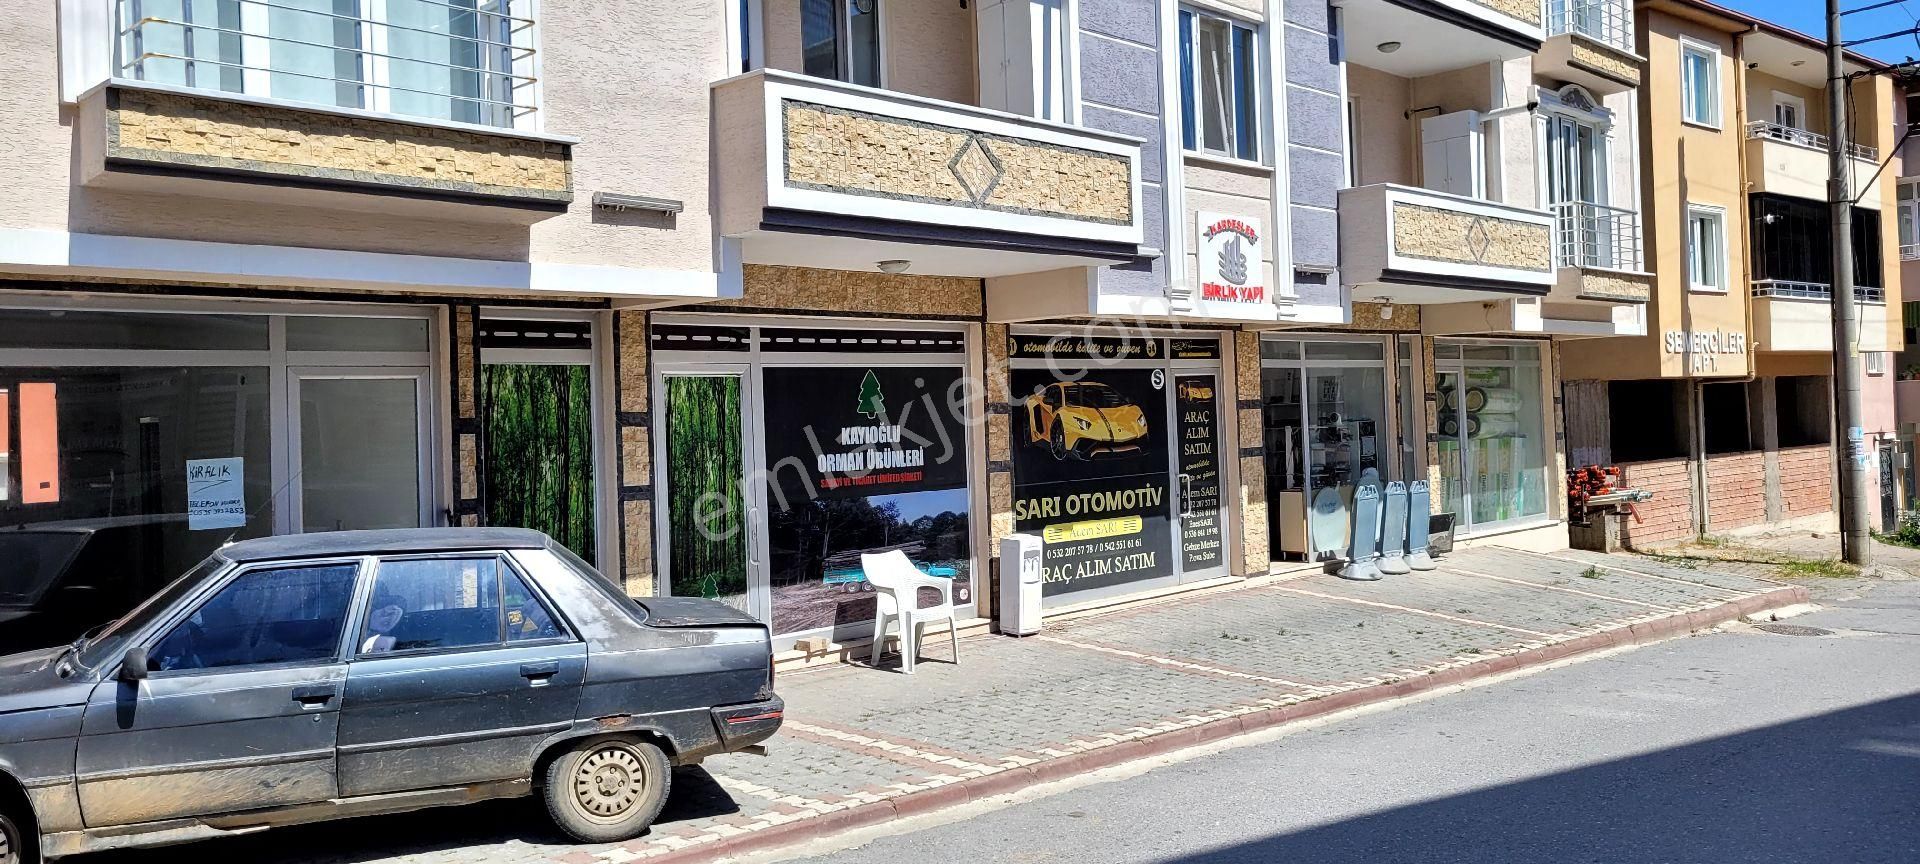 Pamukova Elperek Satılık Dükkan & Mağaza DÜKKAN MAĞAZA OFİS 